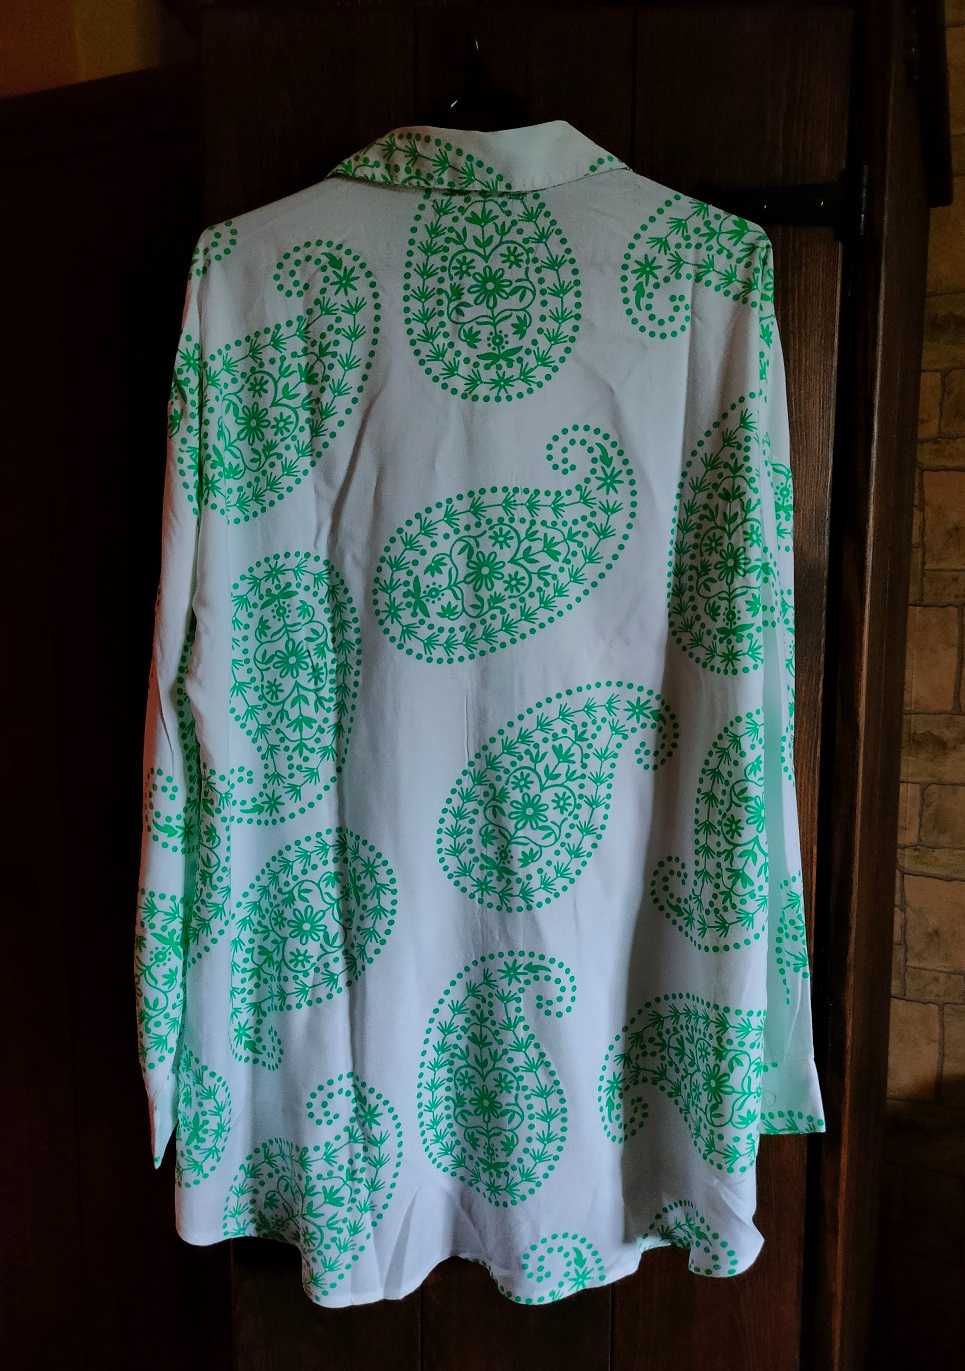 ANISTON koszula damska biała wzór zielony nowa rozmiar 44